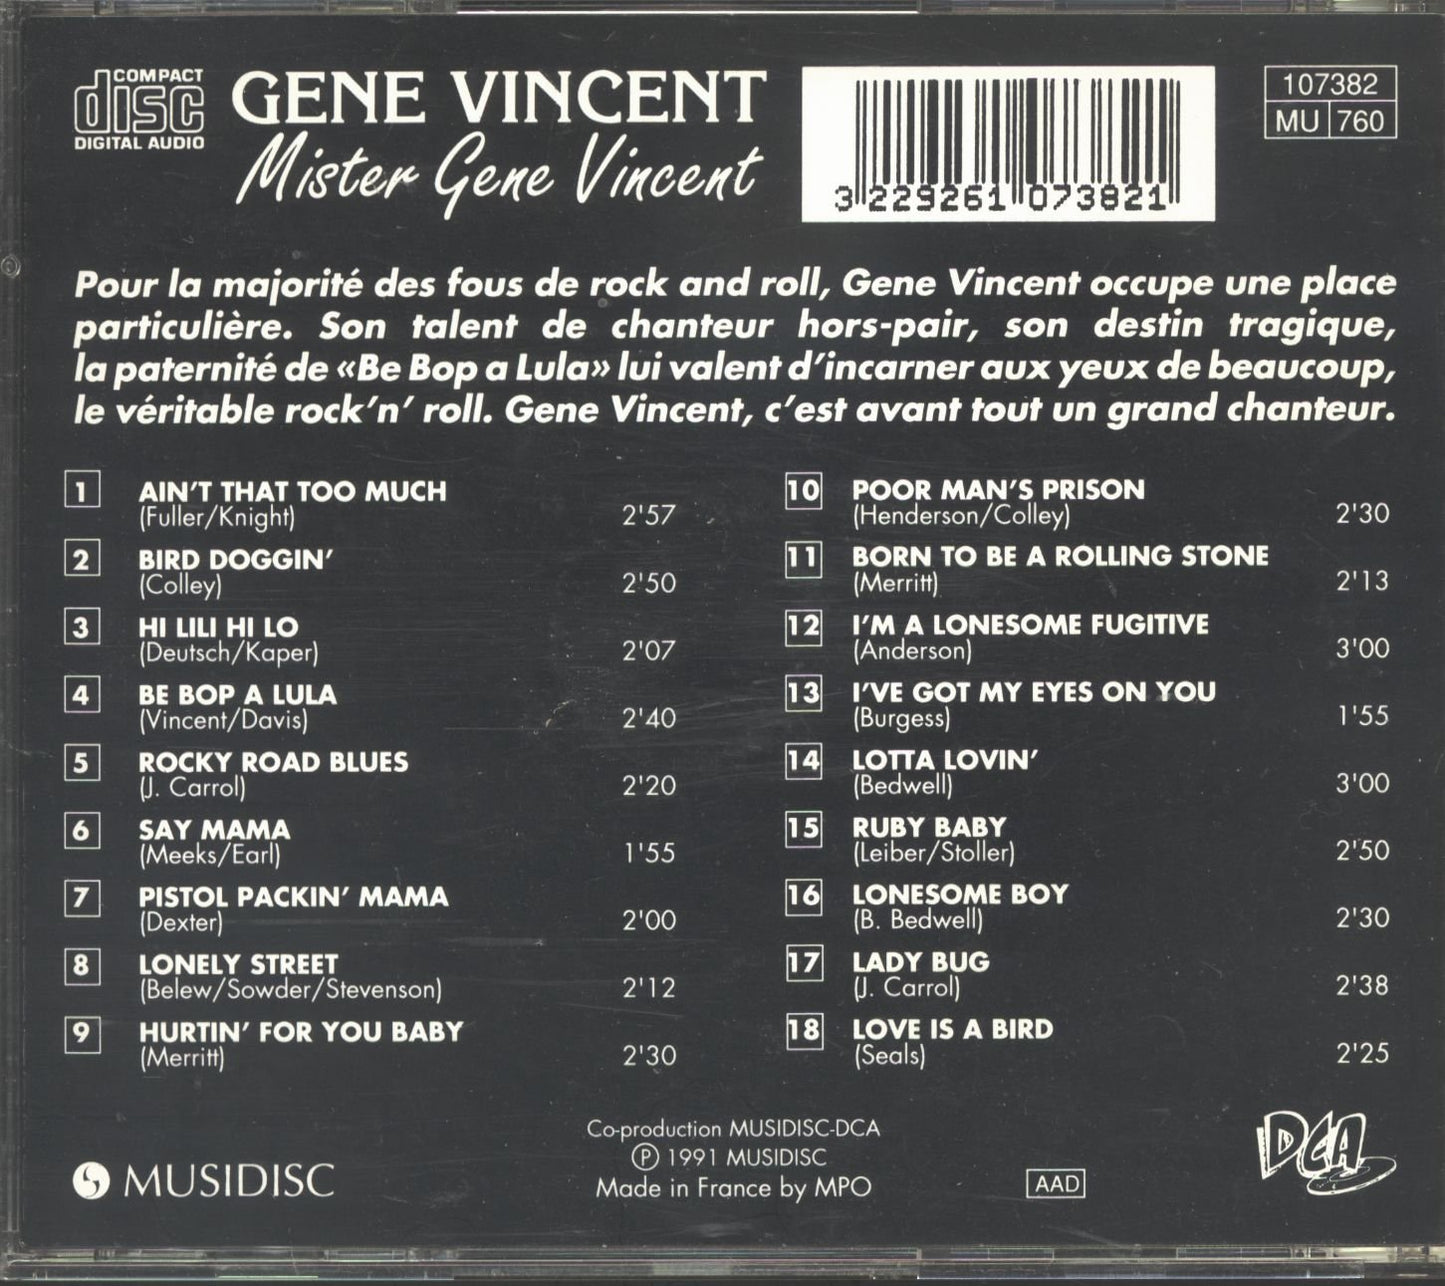 CD - Gene Vincent - Mister Gene Vincent